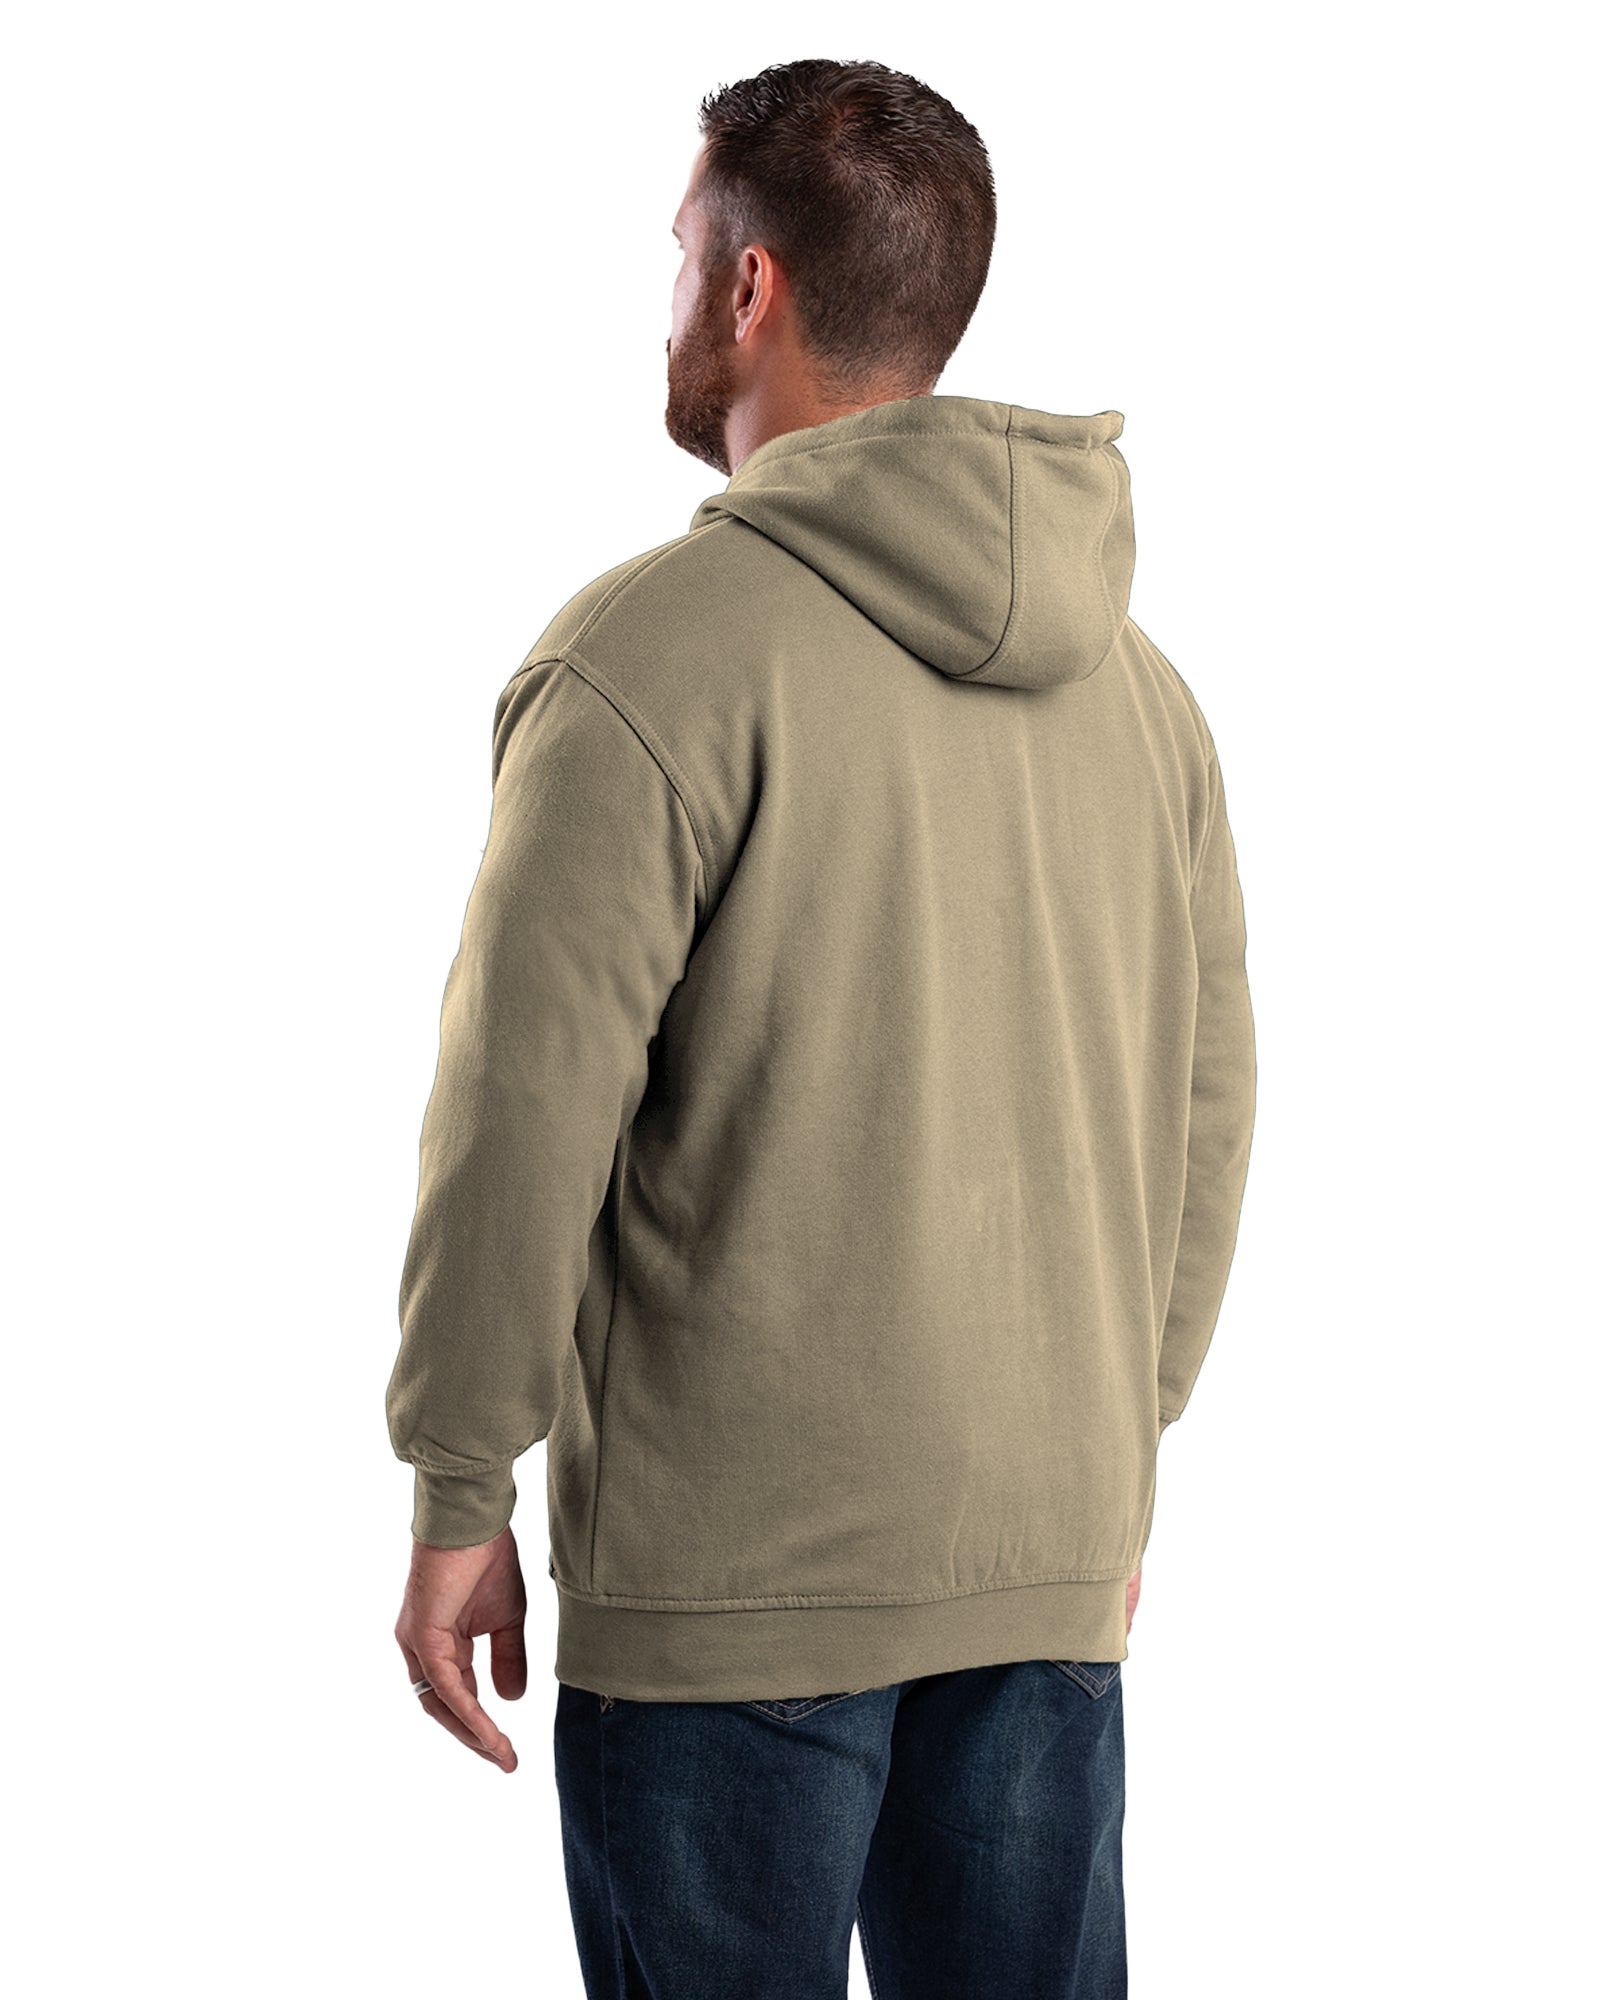 SZ101AG Heritage Thermal-Lined Full-Zip Hooded Sweatshirt